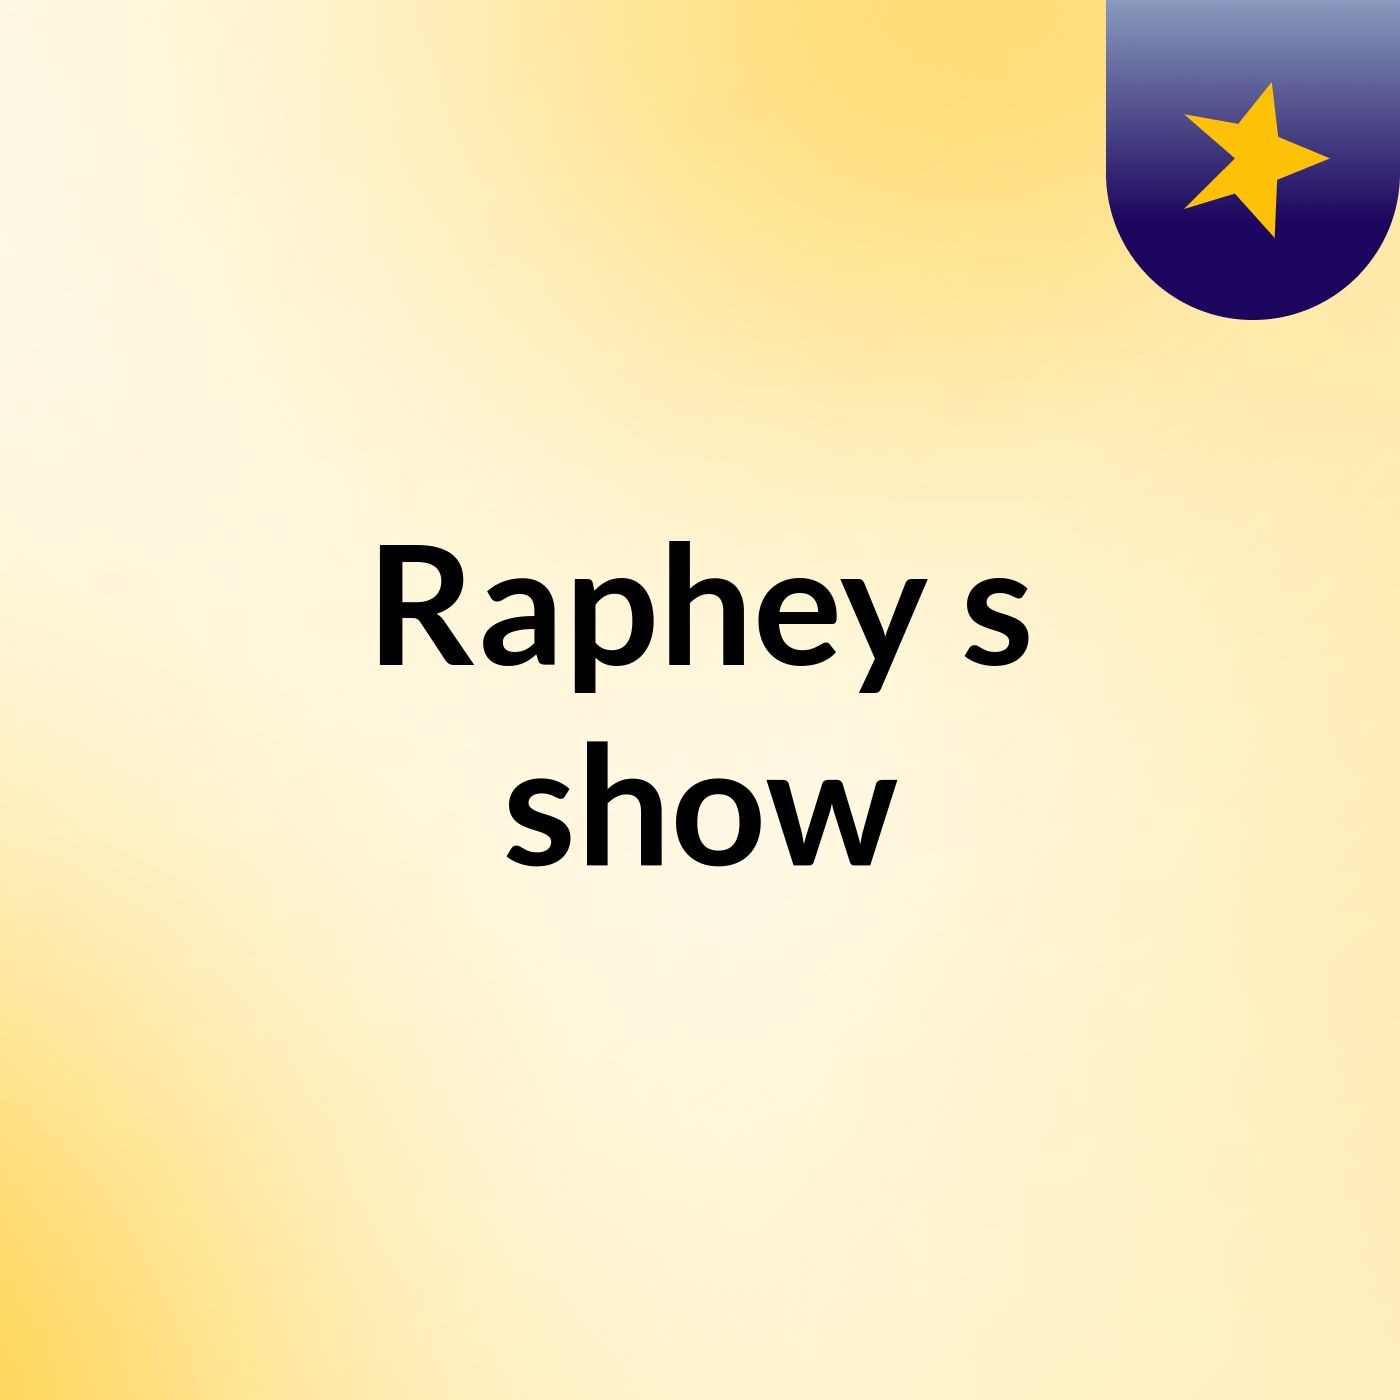 Raphey's show